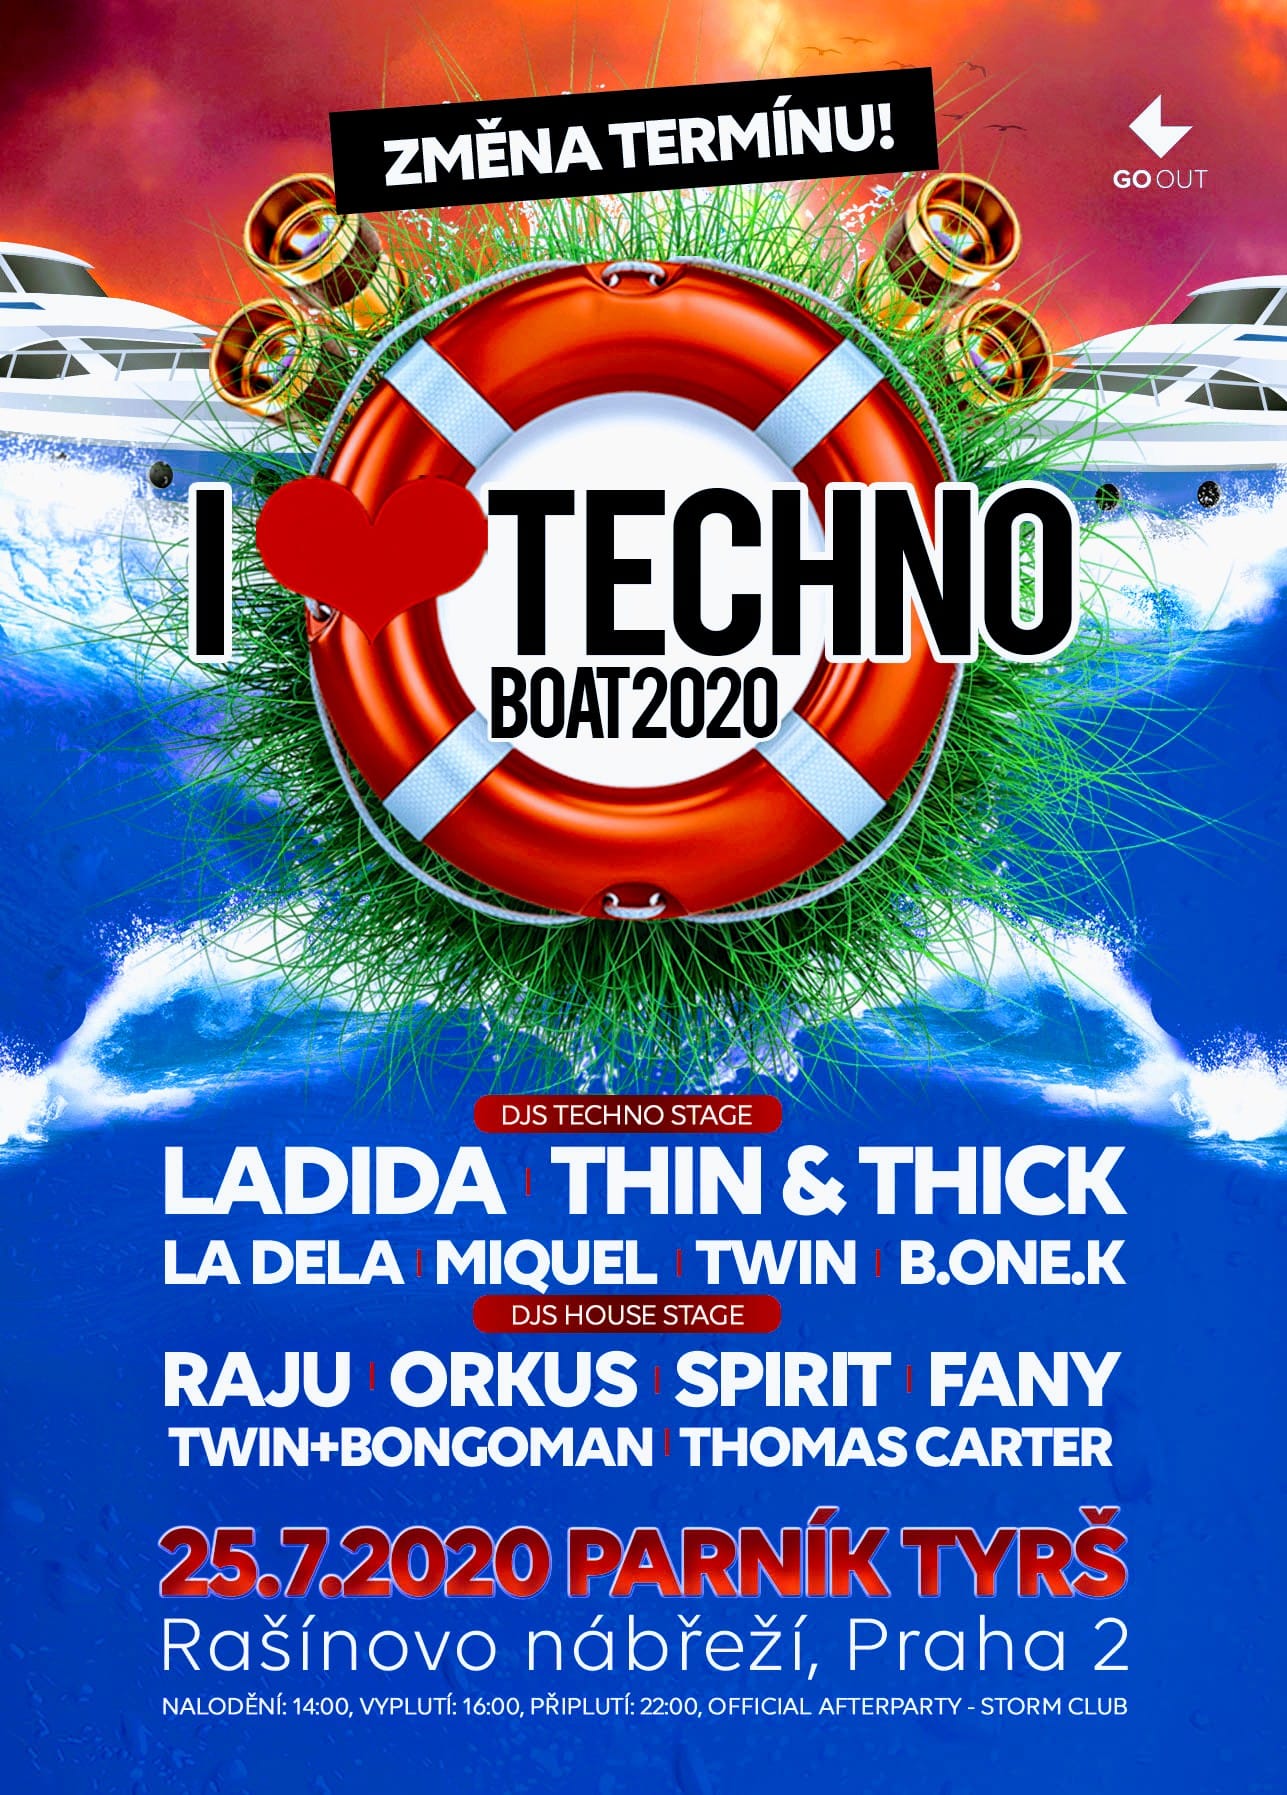 I Love Techno Boat 2020